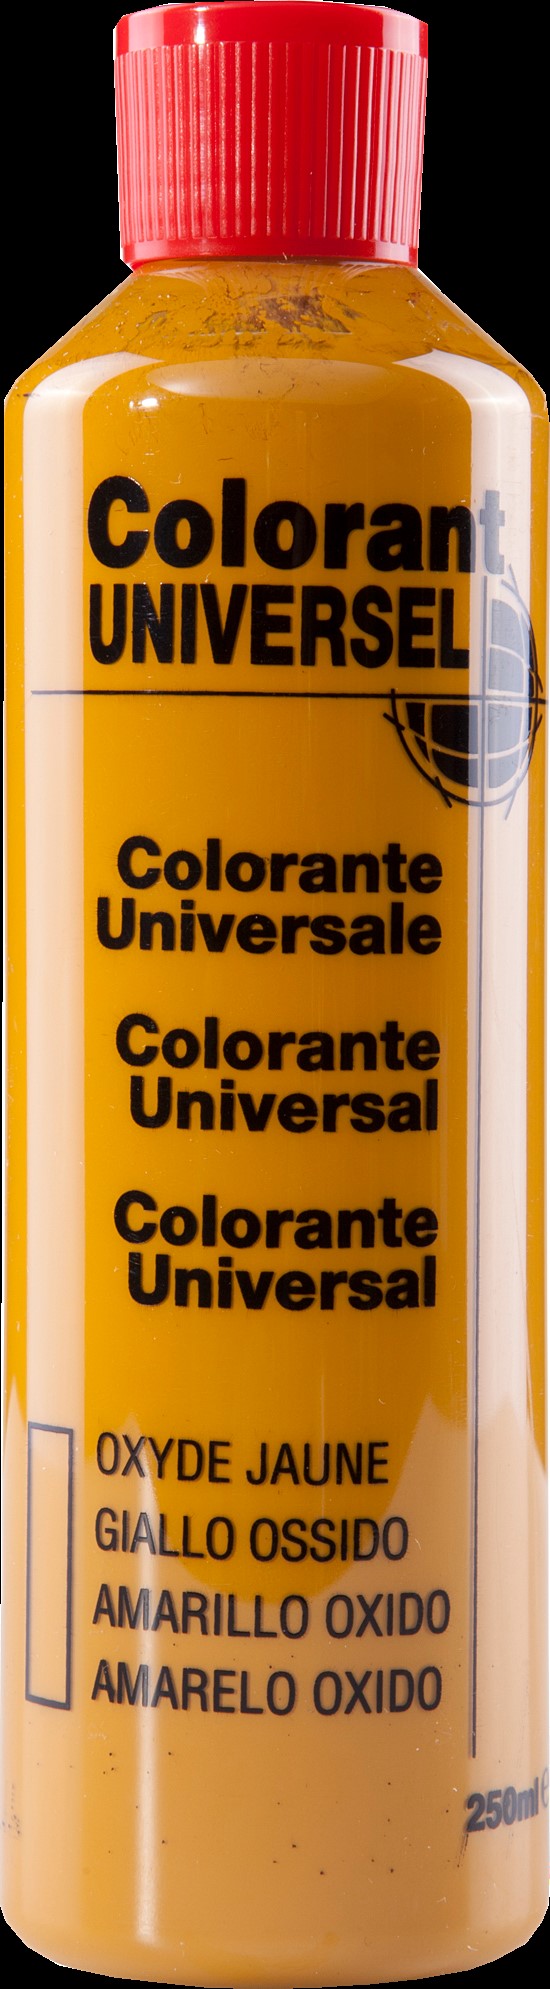 Colorant universel pour peinture oxyde jaune 250ml